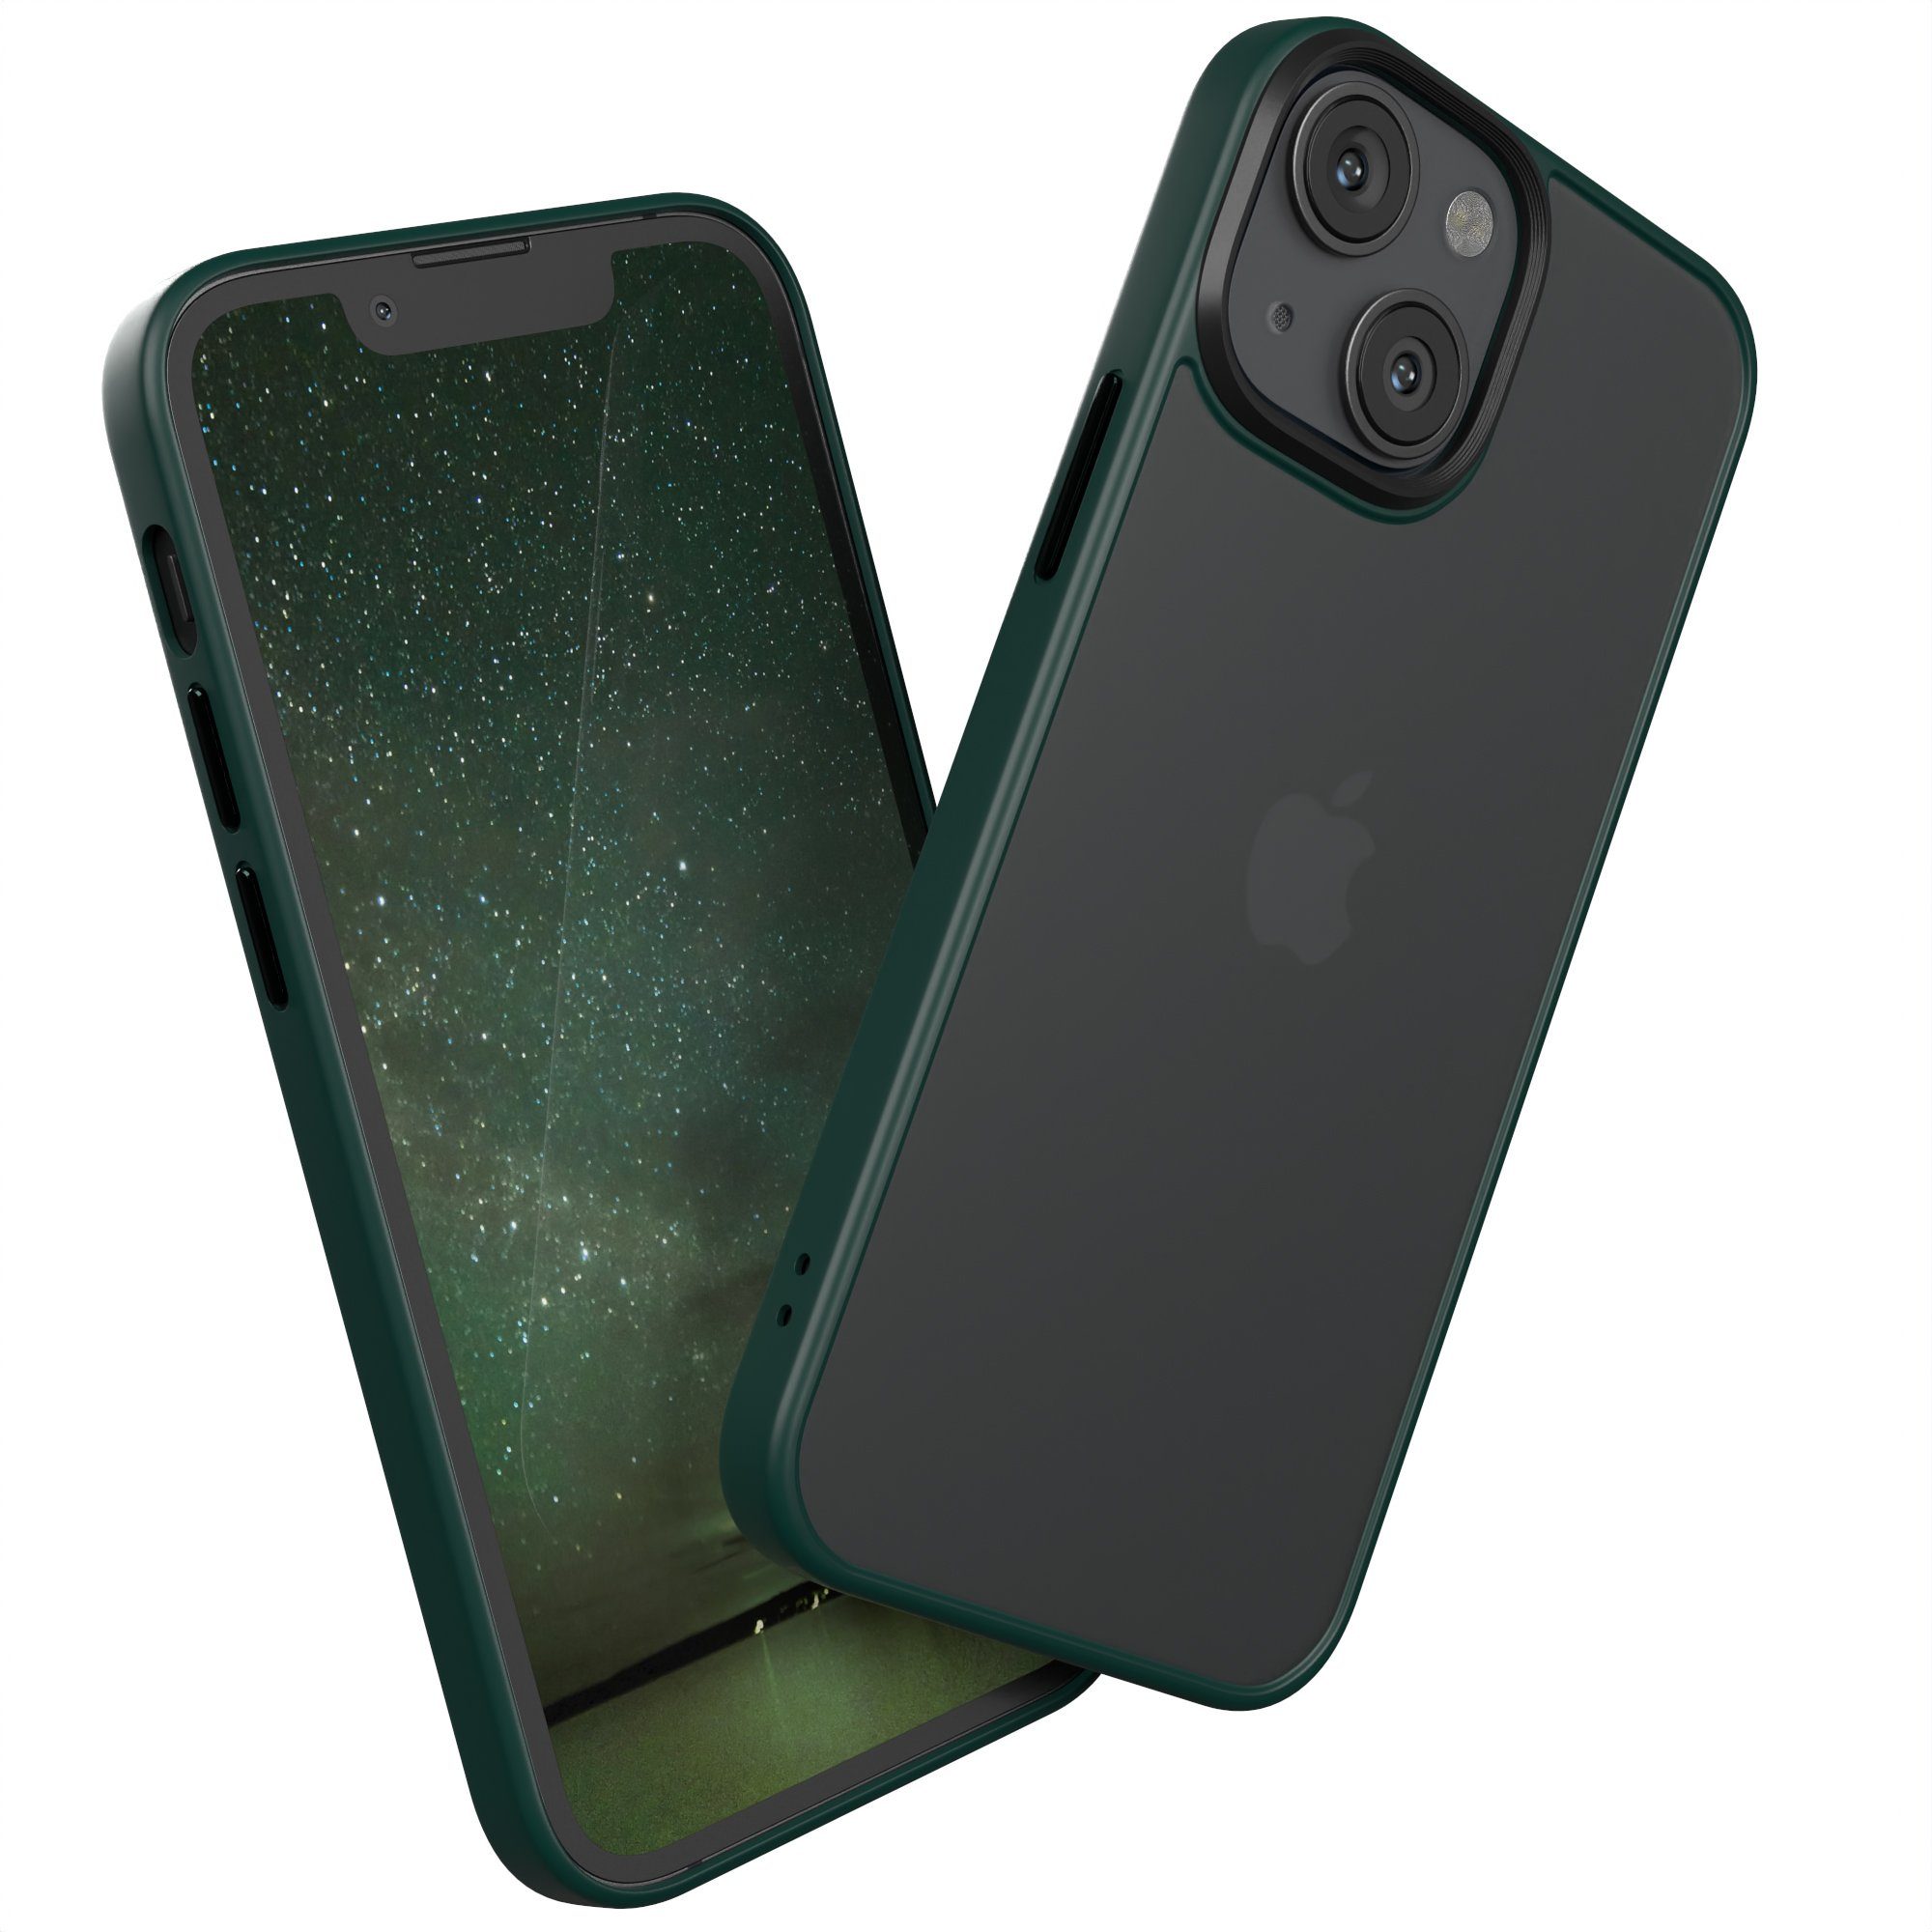 EAZY CASE Handyhülle Outdoor Case für Apple iPhone 13 Mini 5,4 Zoll, Slim Cover Durchsichtig Robust Back Cover stoßfest Grün / Nachtgrün